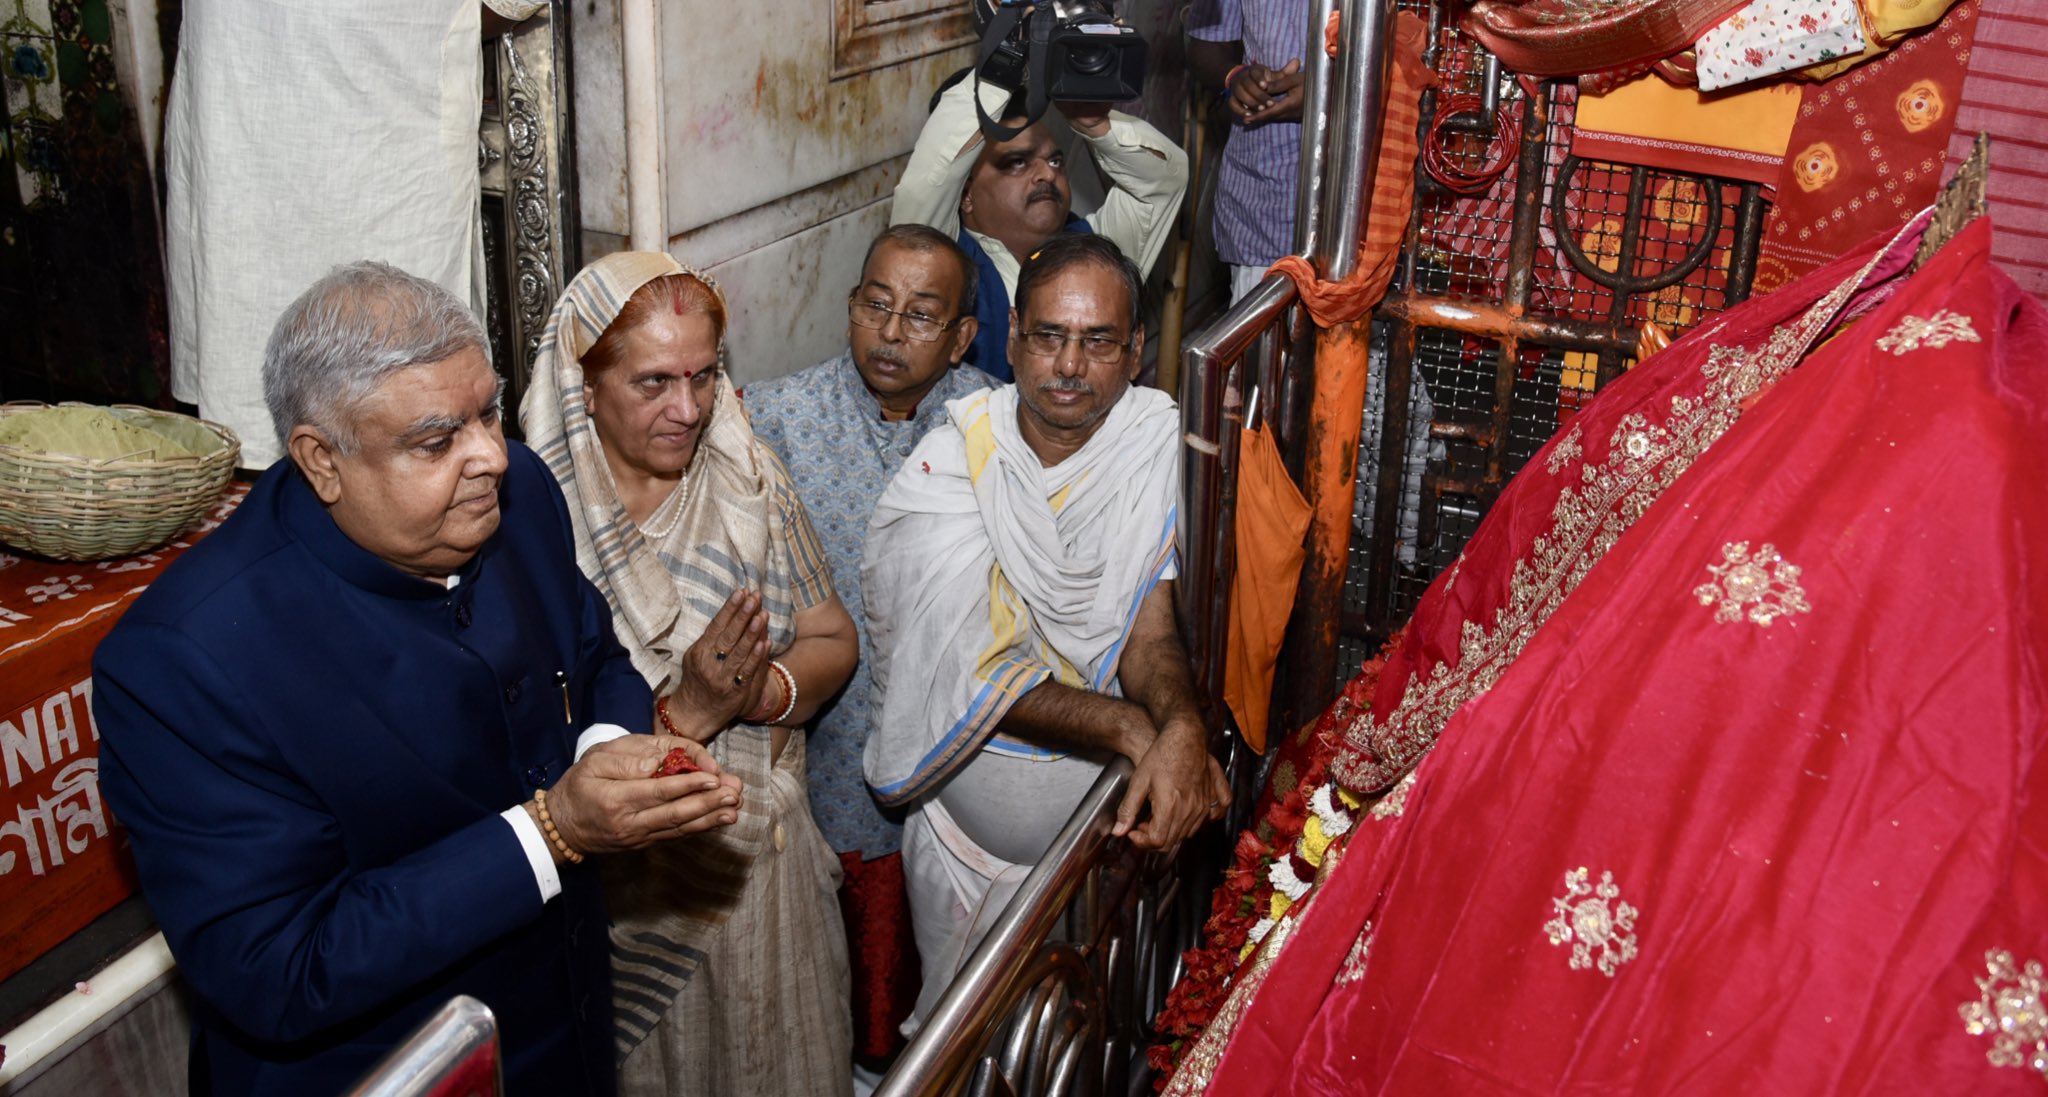 29 नवंबर 2022 को कोलकाता के कालीघाट काली मंदिर में अपनी धर्मपत्नी डॉ. सुदेश धनखड़ के साथ पूजा-अर्चना करते हुए उपराष्ट्रपति श्री जगदीप धनखड़।  